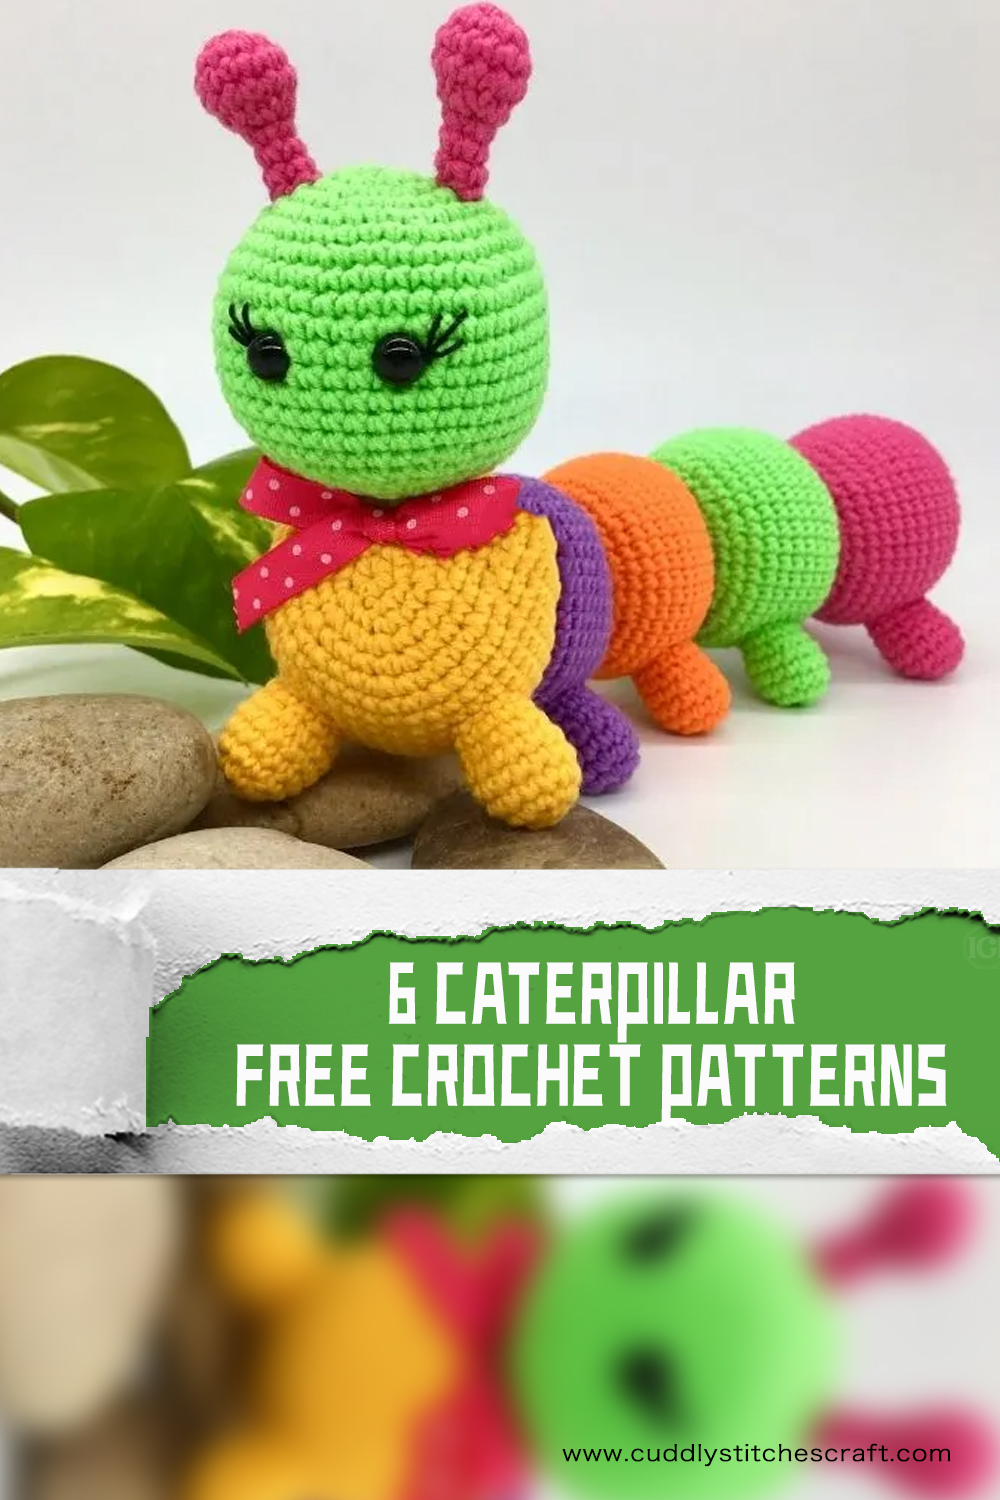 6 FREE Caterpillar Crochet Patterns